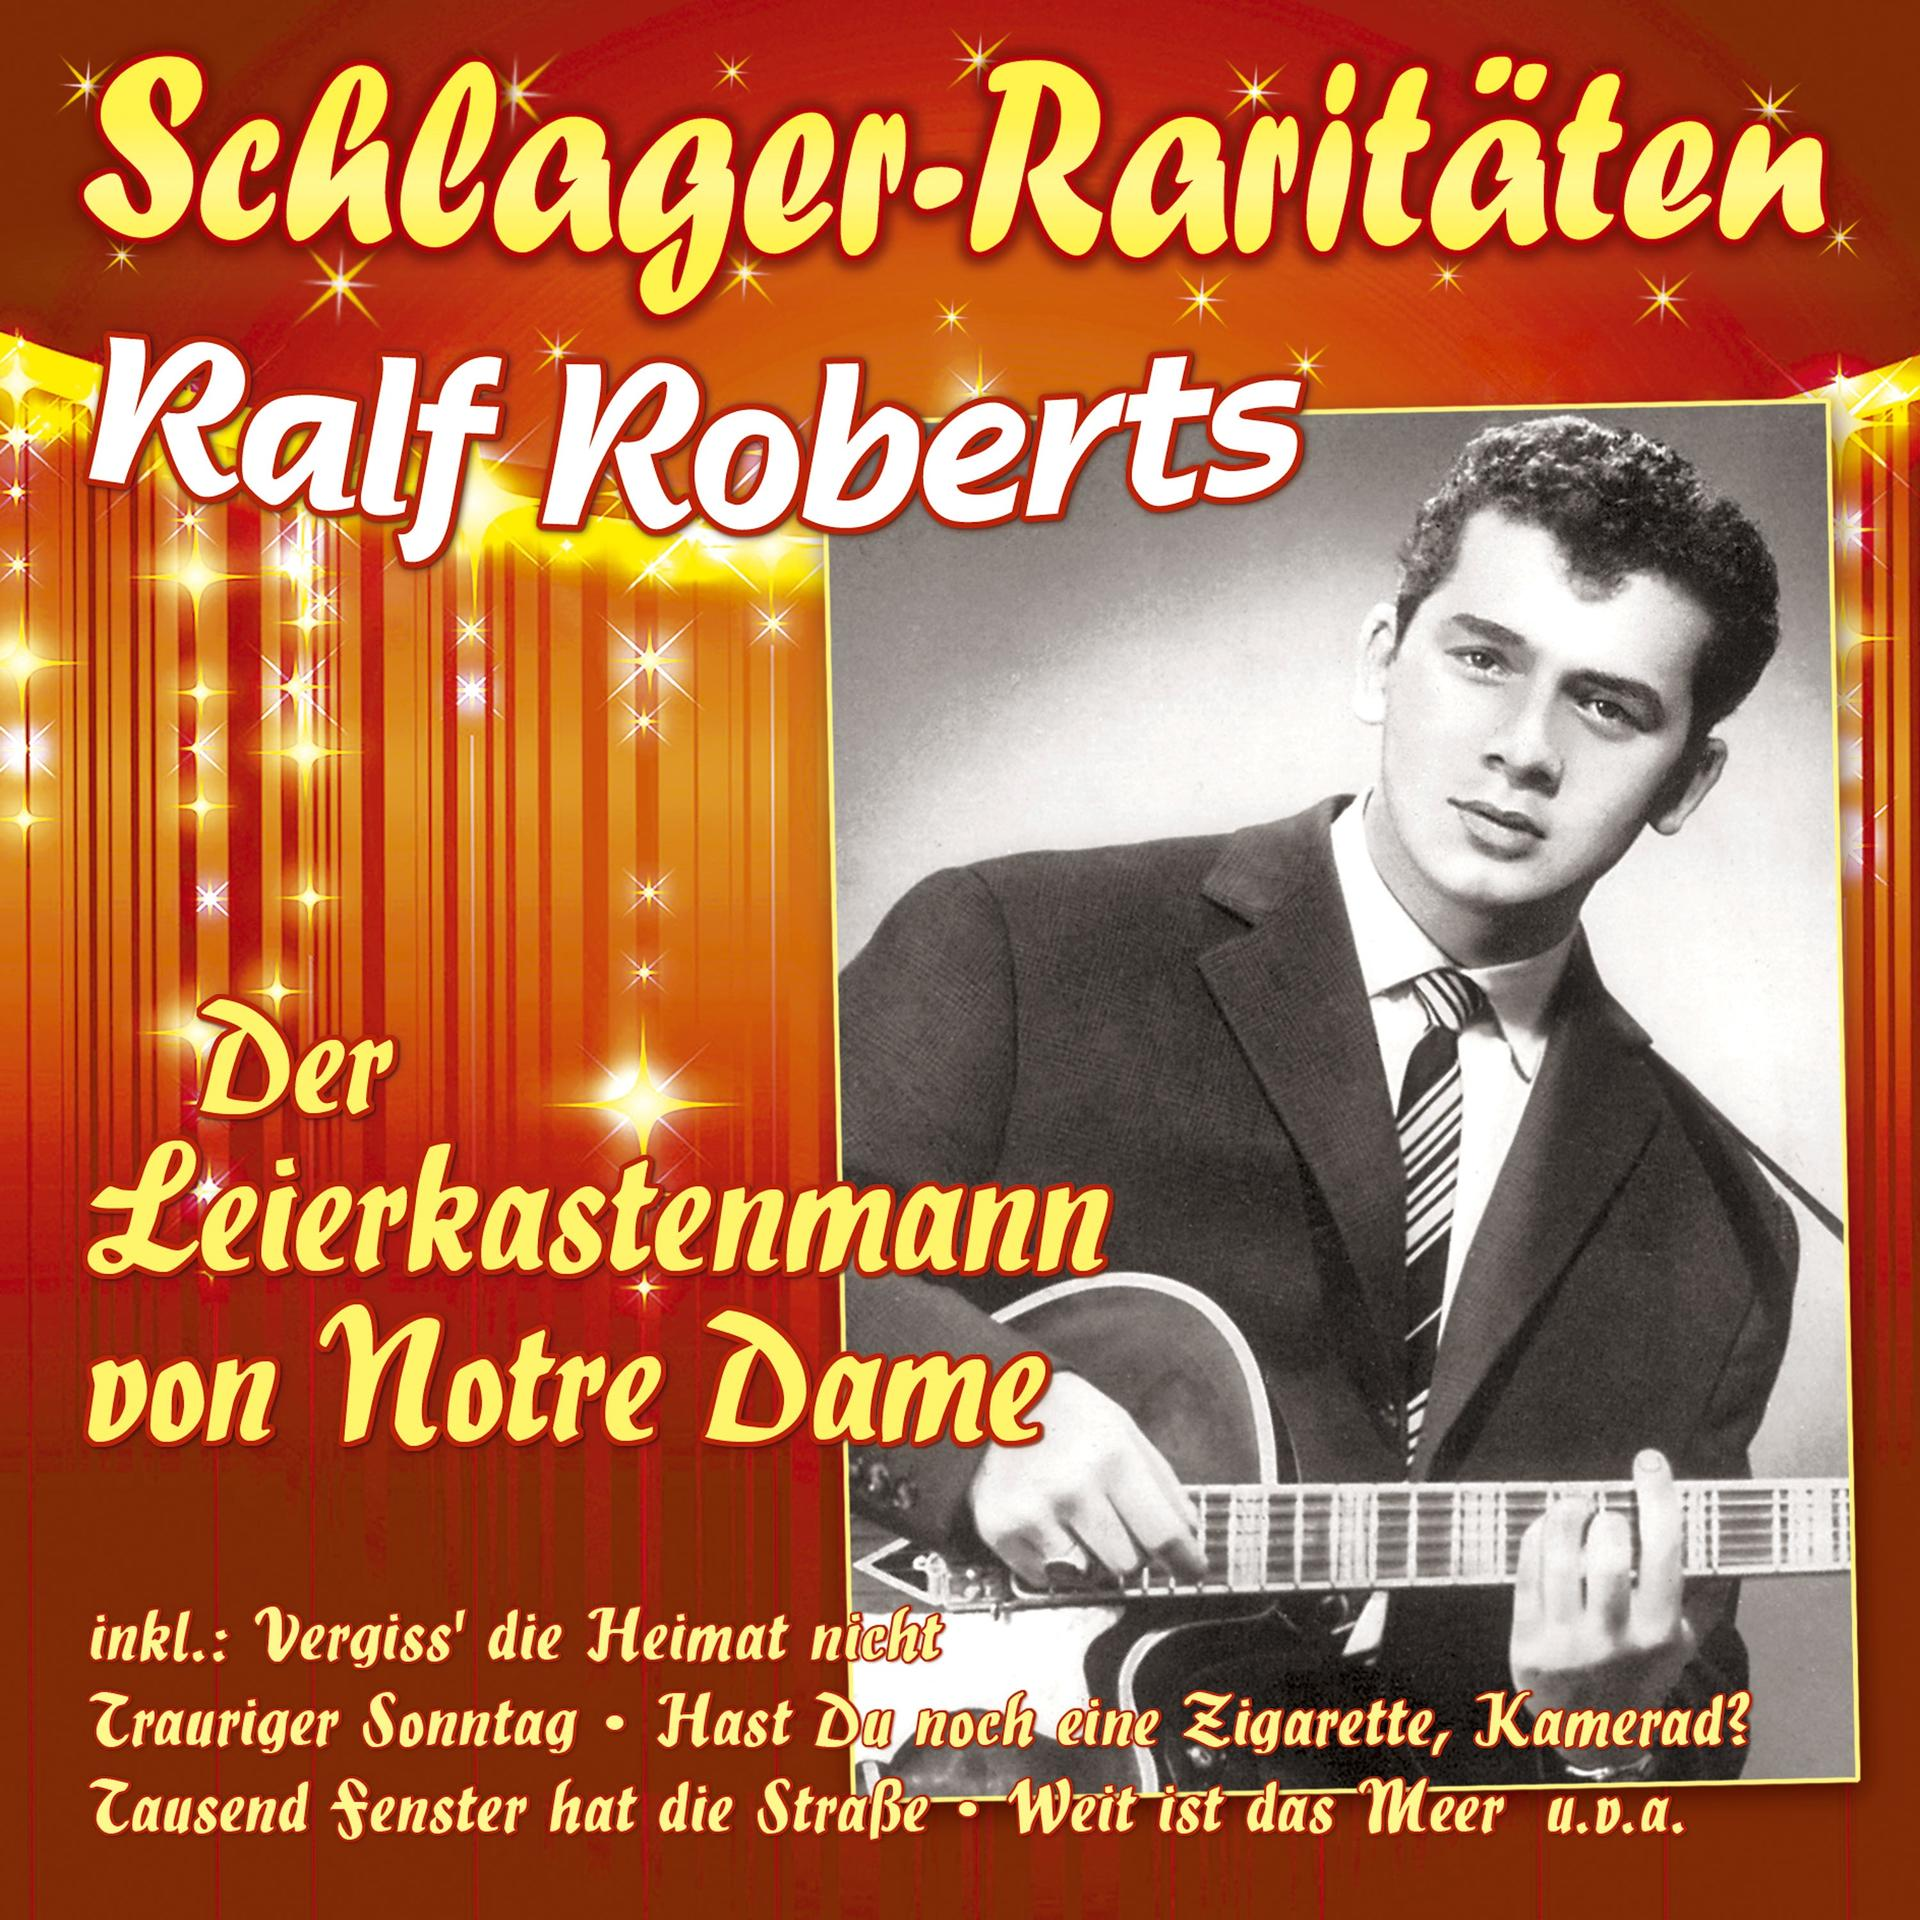 Von Roberts Ralf Der Dame-Schlager-Rari Notre - - Leierkastenmann (CD)